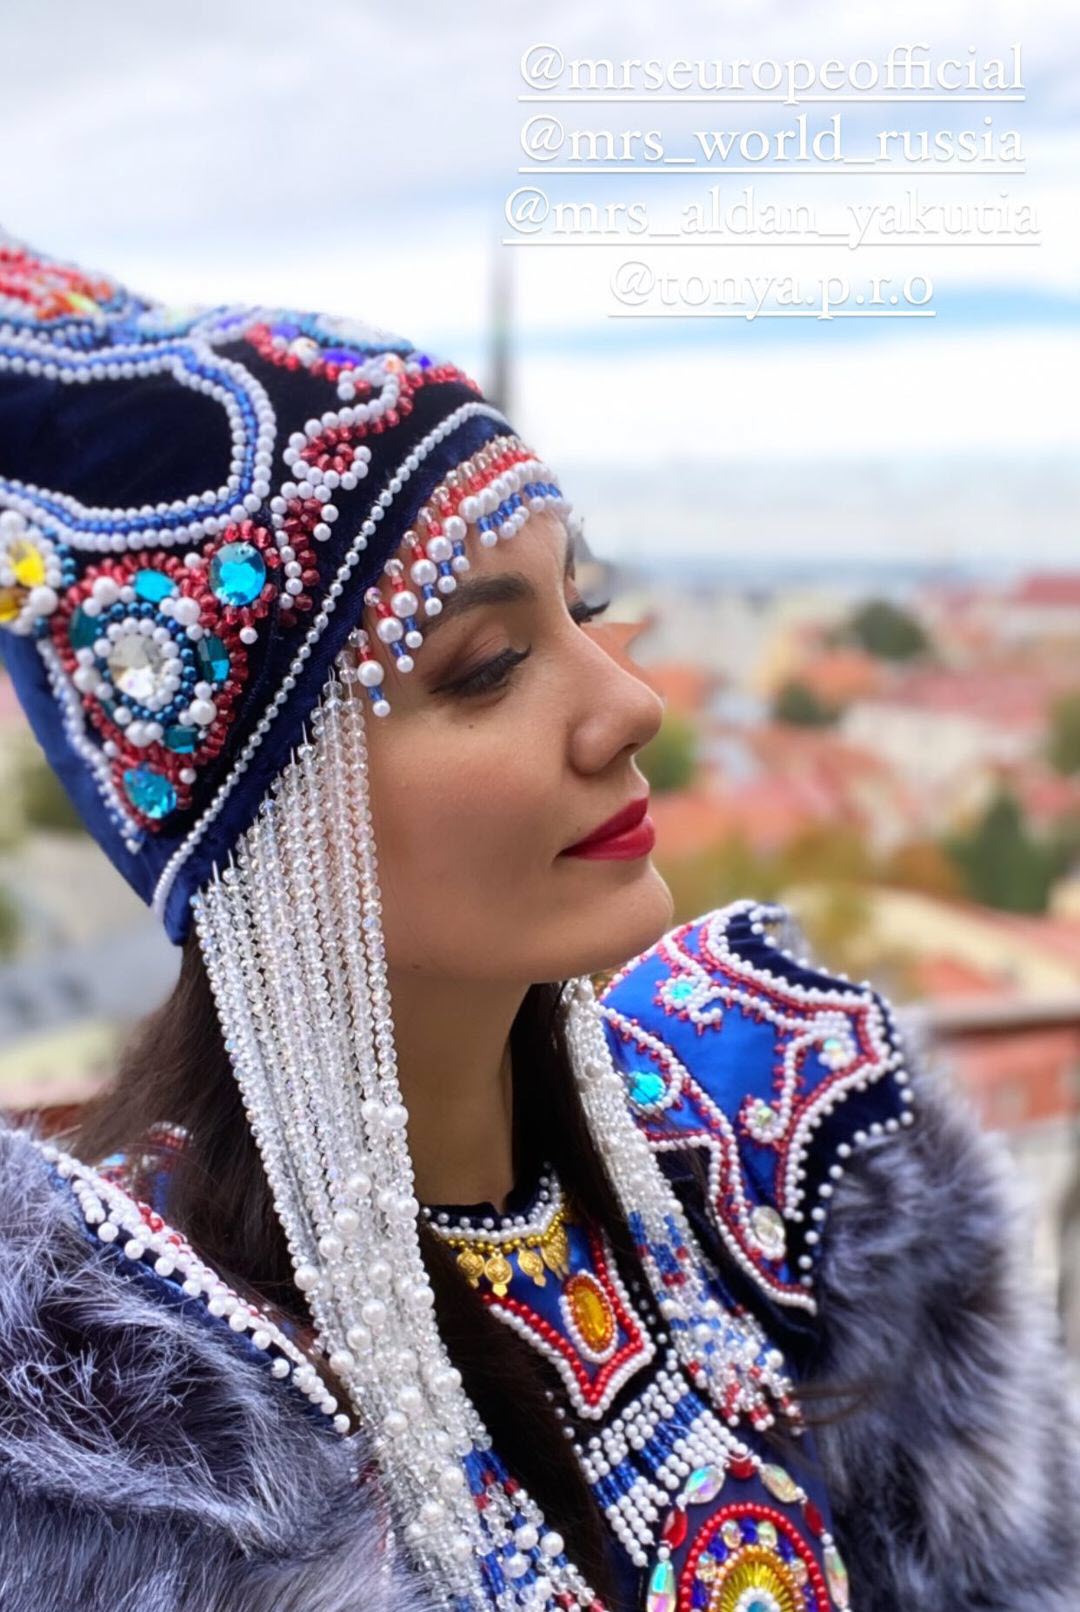 Жительница Алдана участвует в конкурсе "Миссис Европа-2021" в Таллине